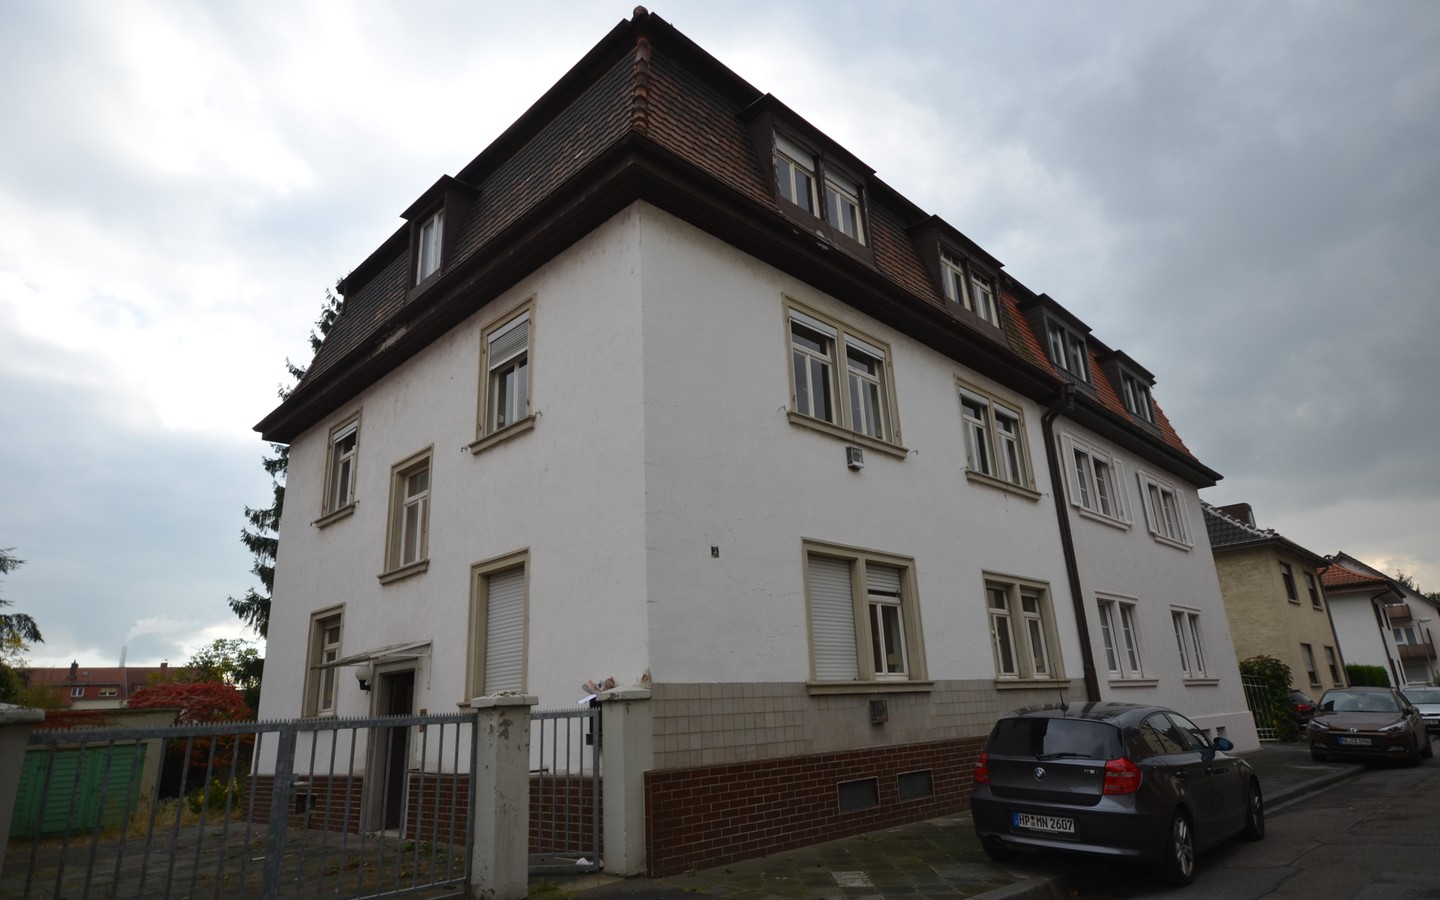 Vorderansicht - Mannheim Sandhofen: Imposantes 3 Familienhaus in bevorzugter, ruhiger und zentraler Lage